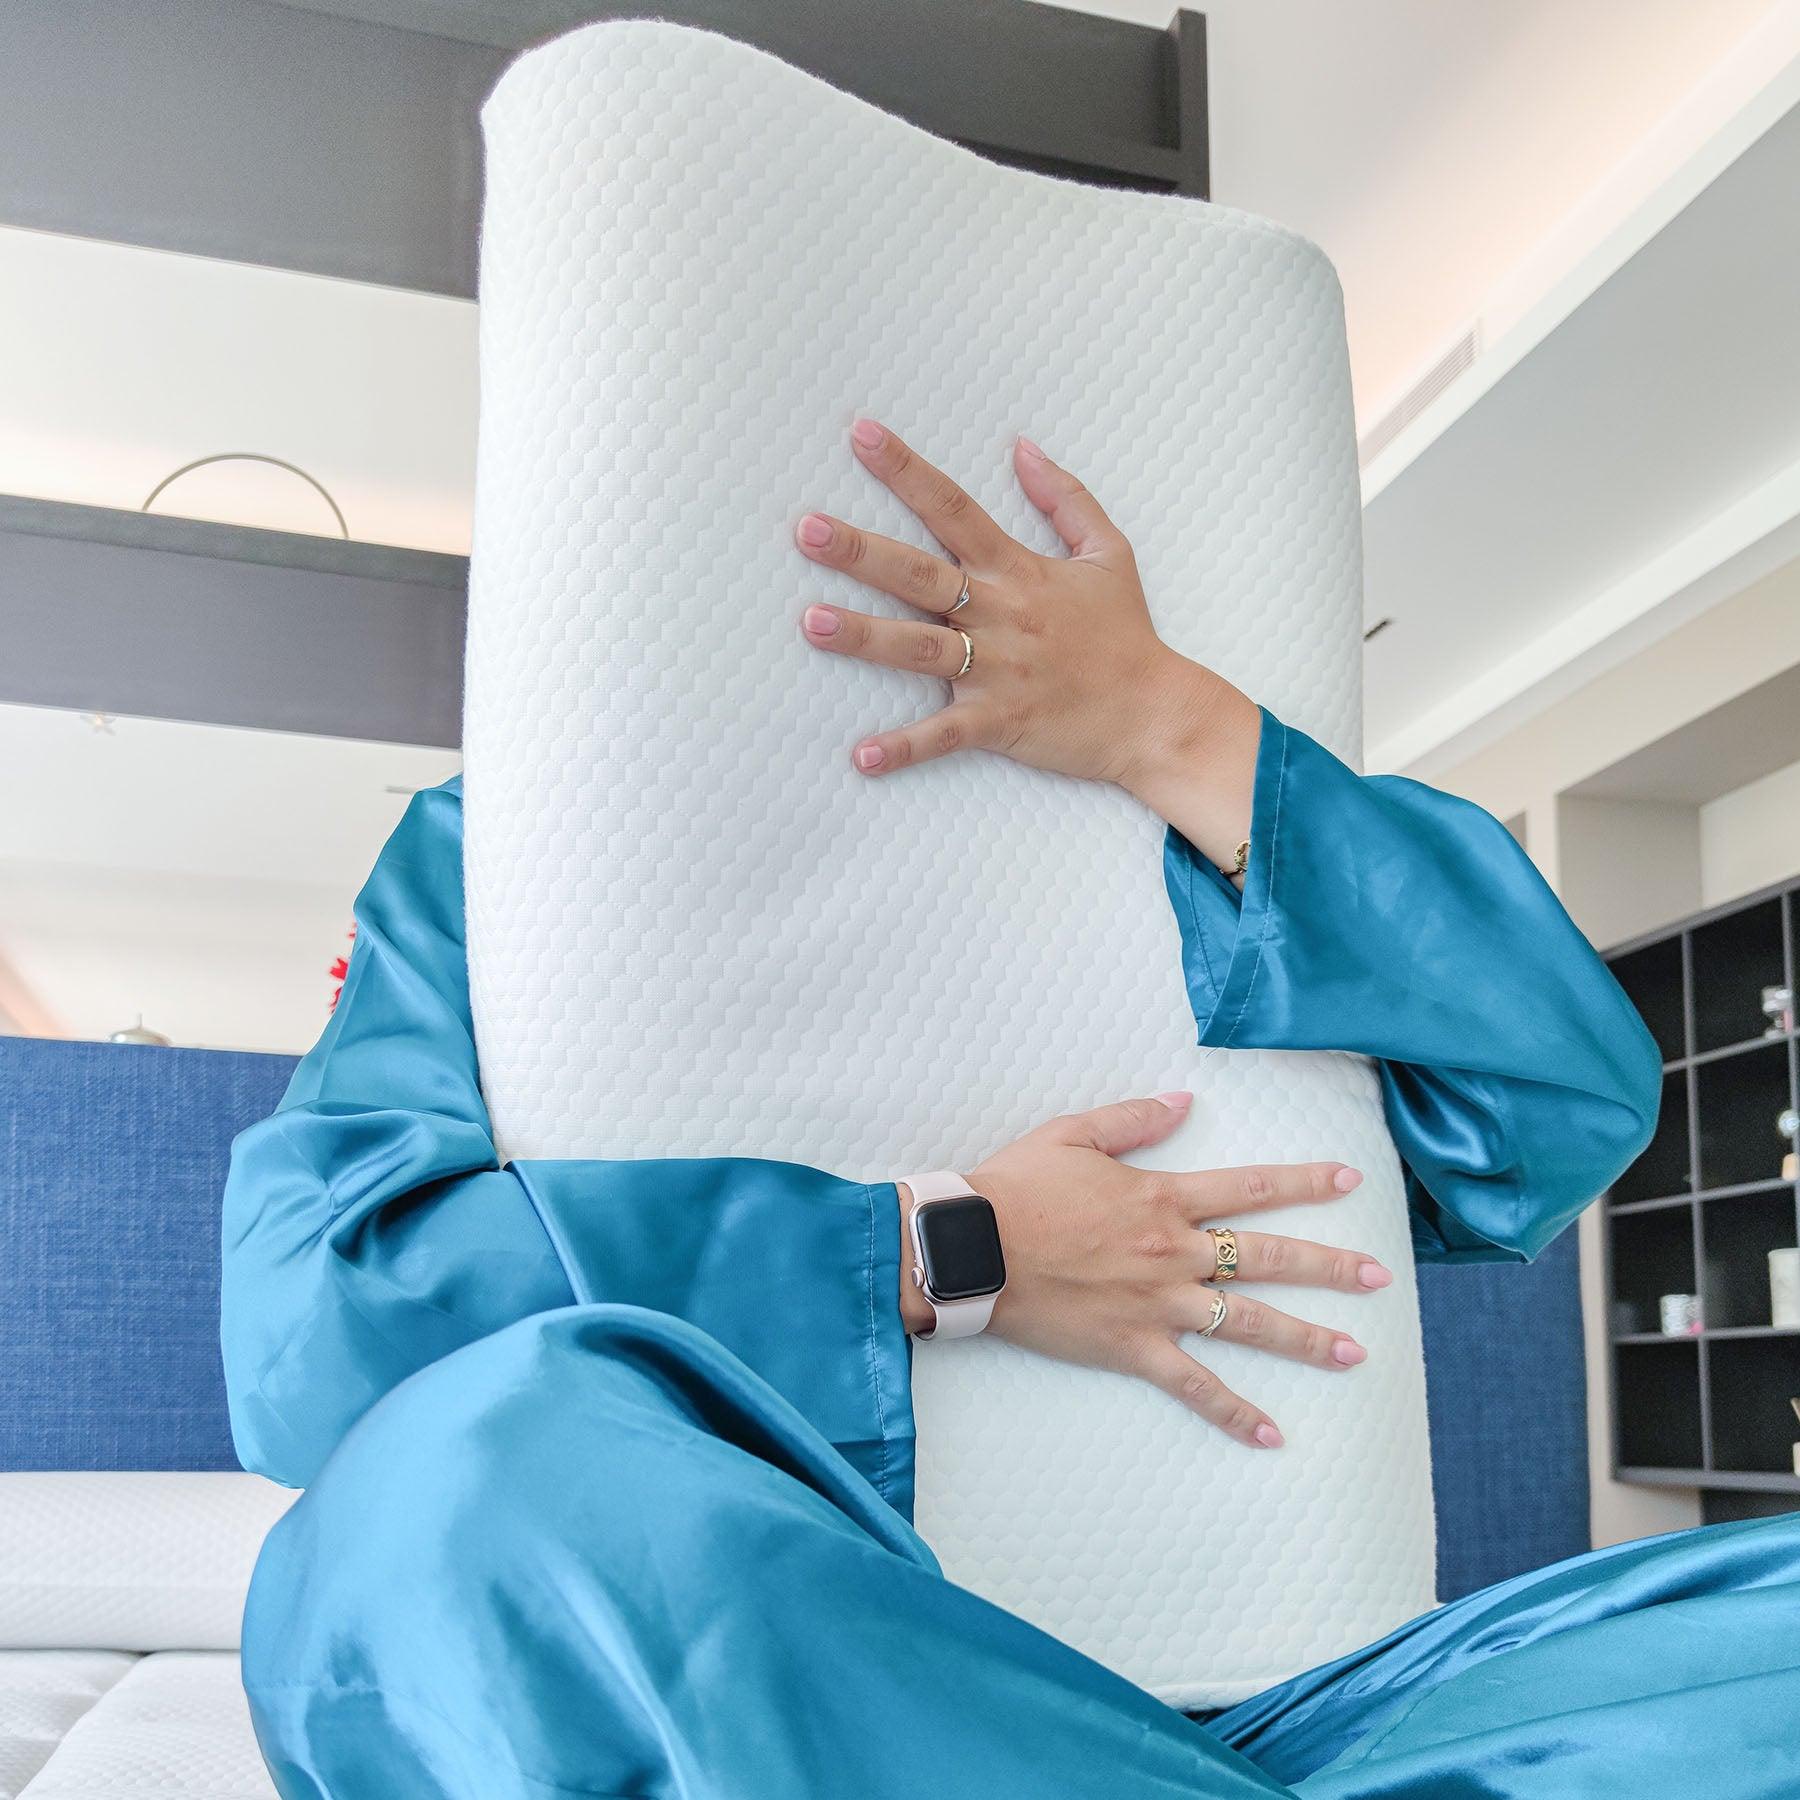 Dettaglio del cuscino cervicale Memo in memory foam di Beliamo, ideale per un supporto ergonomico del collo